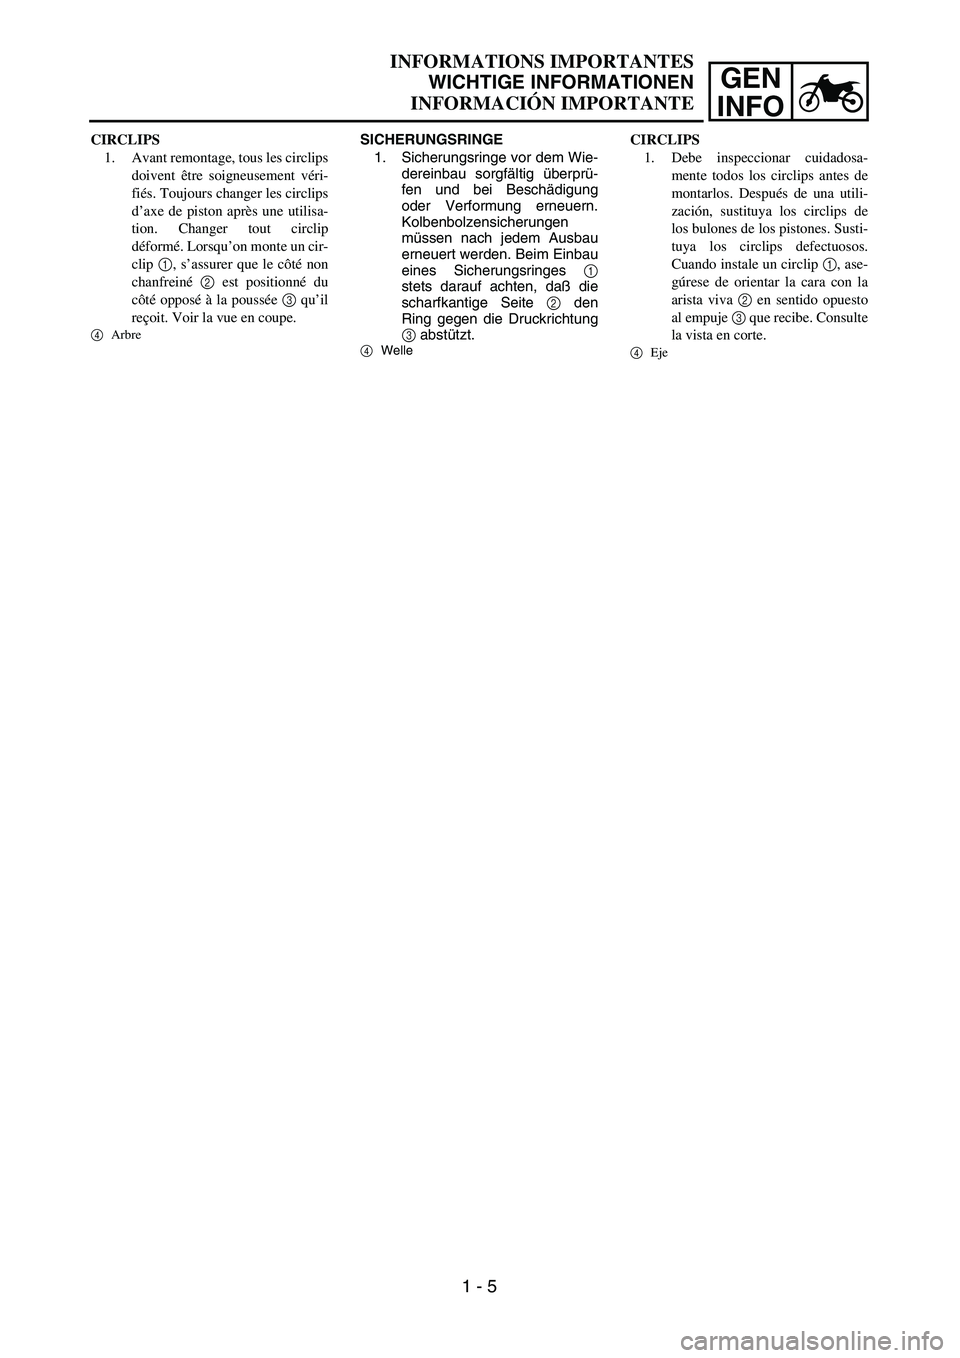 YAMAHA WR 450F 2004  Manuale de Empleo (in Spanish) GEN
INFO
SICHERUNGSRINGE
1. Sicherungsringe vor dem Wie-
dereinbau sorgfältig überprü-
fen und bei Beschädigung
oder Verformung erneuern.
Kolbenbolzensicherungen
müssen nach jedem Ausbau
erneuert